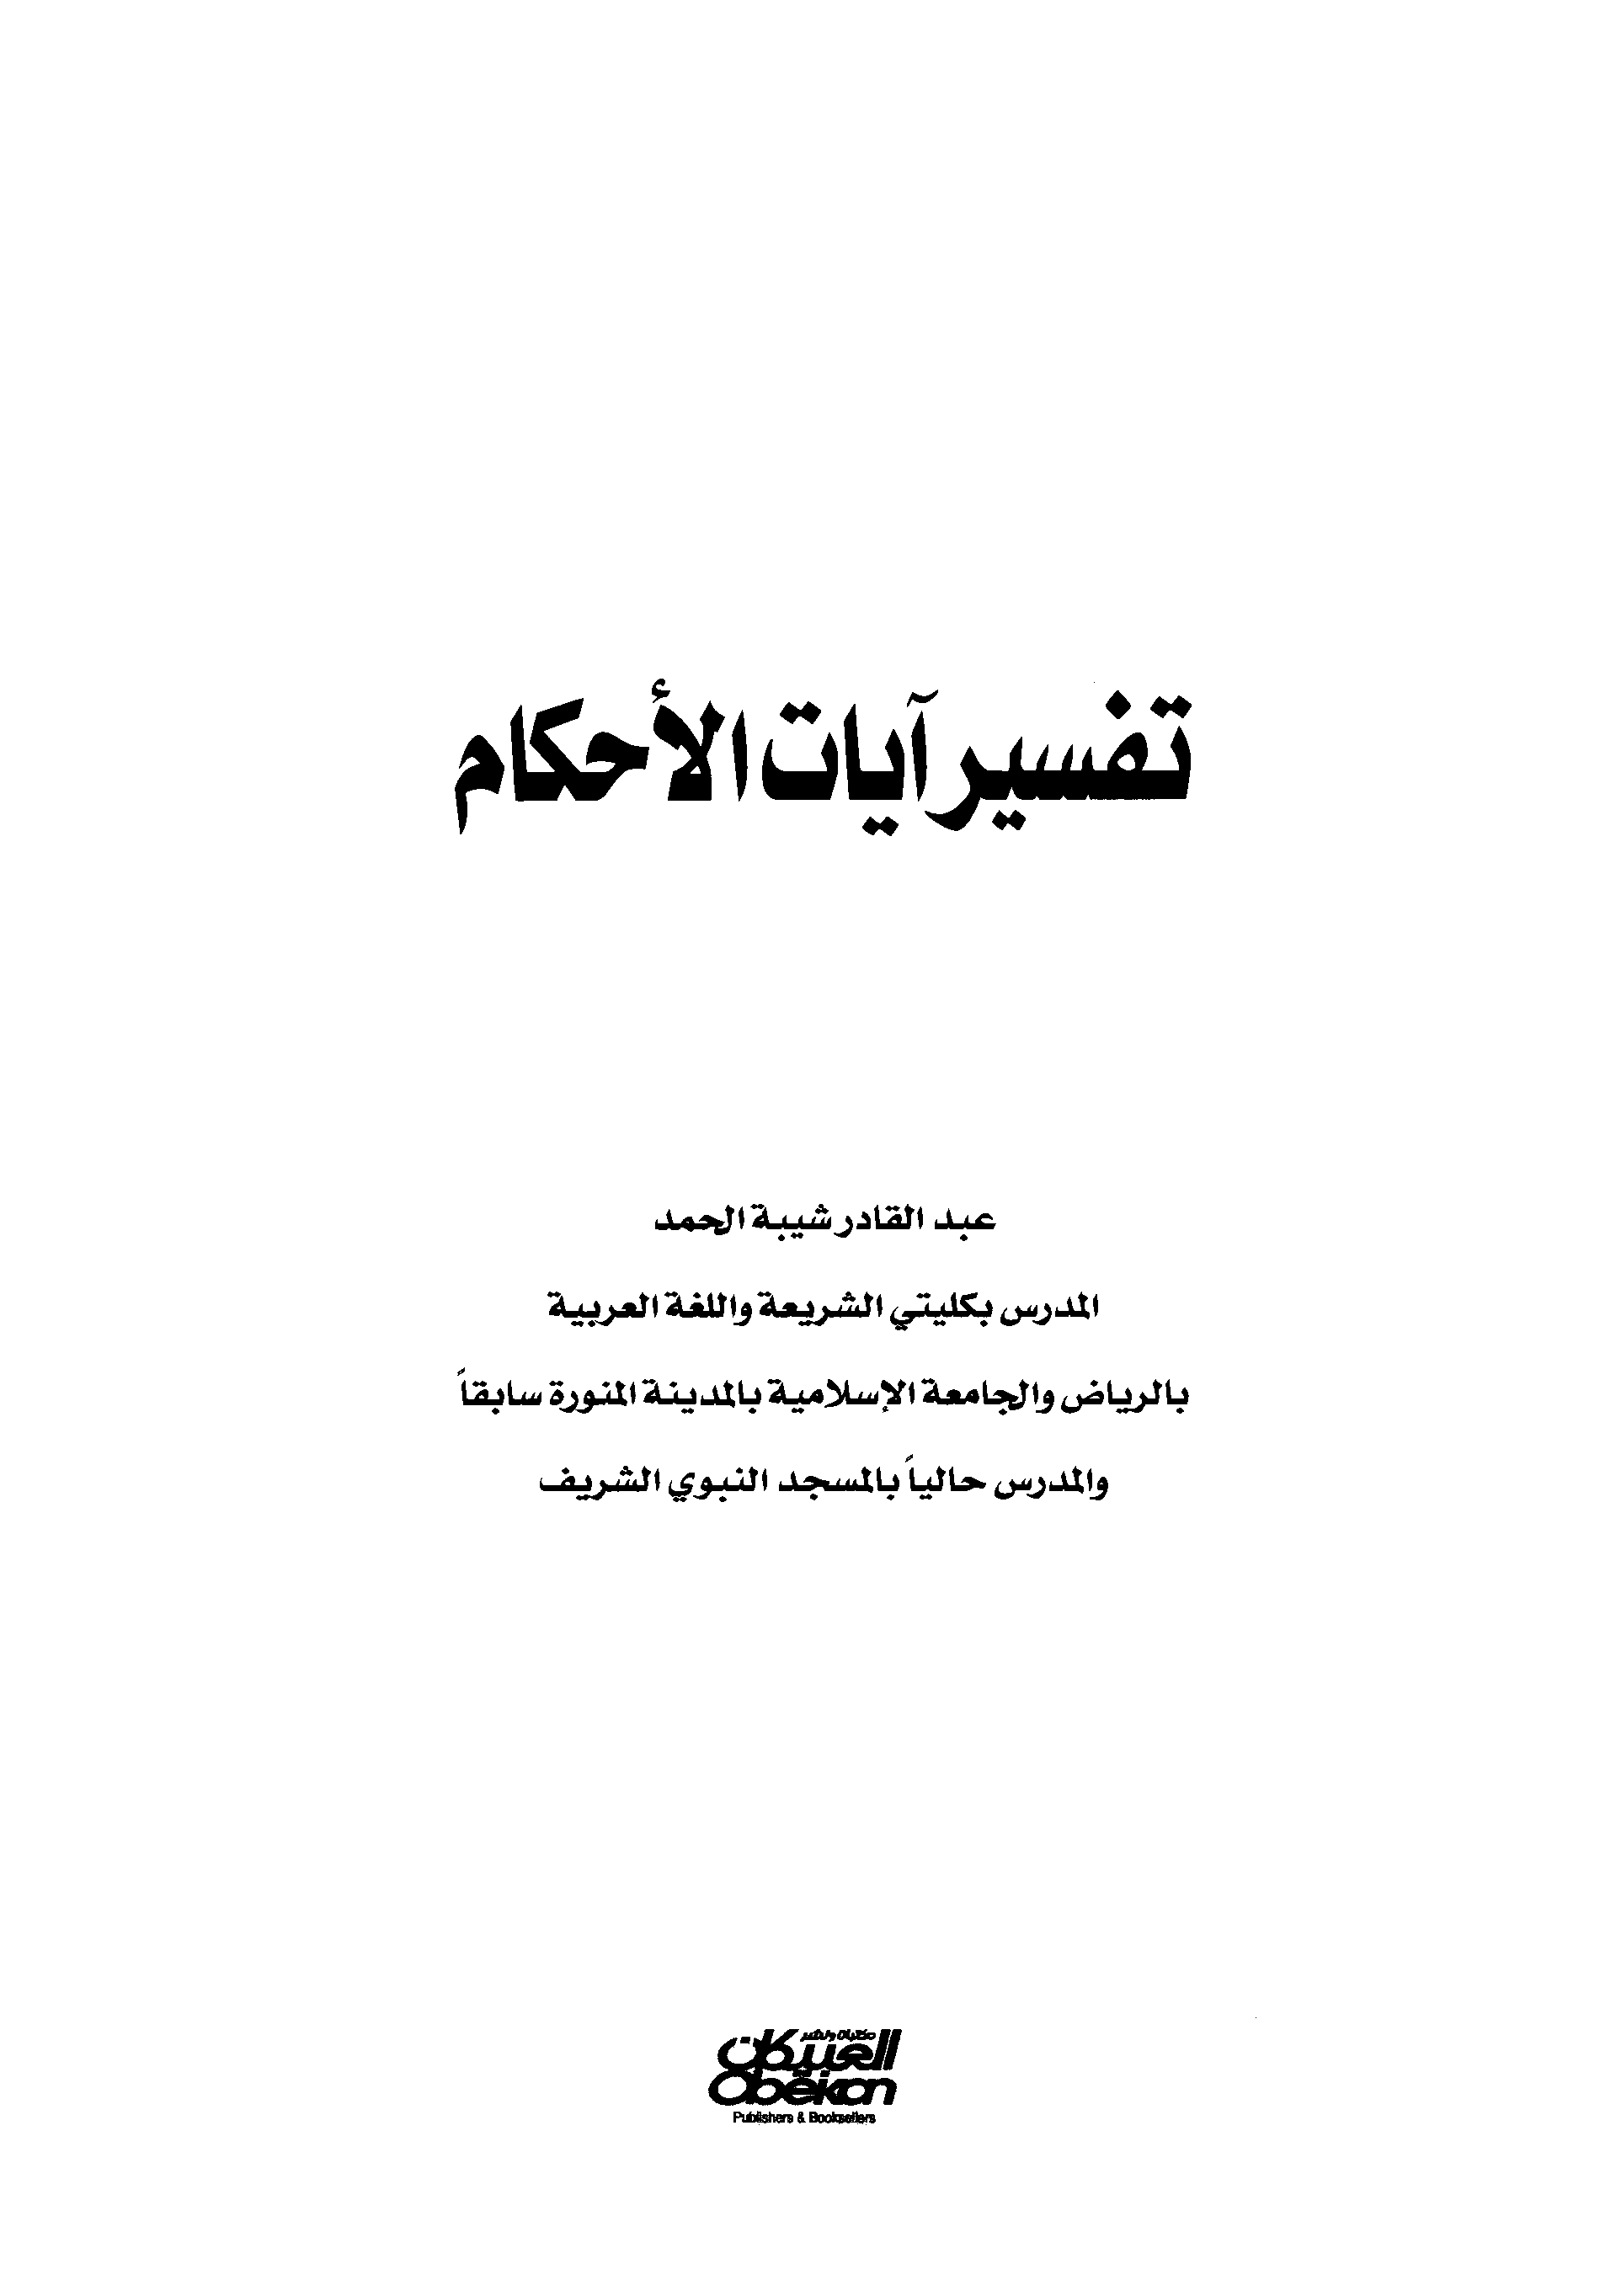 تحميل كتاب تفسير آيات الأحكام (عبد القادر شيبة) لـِ: الشيخ عبد القادر شيبة الحمد